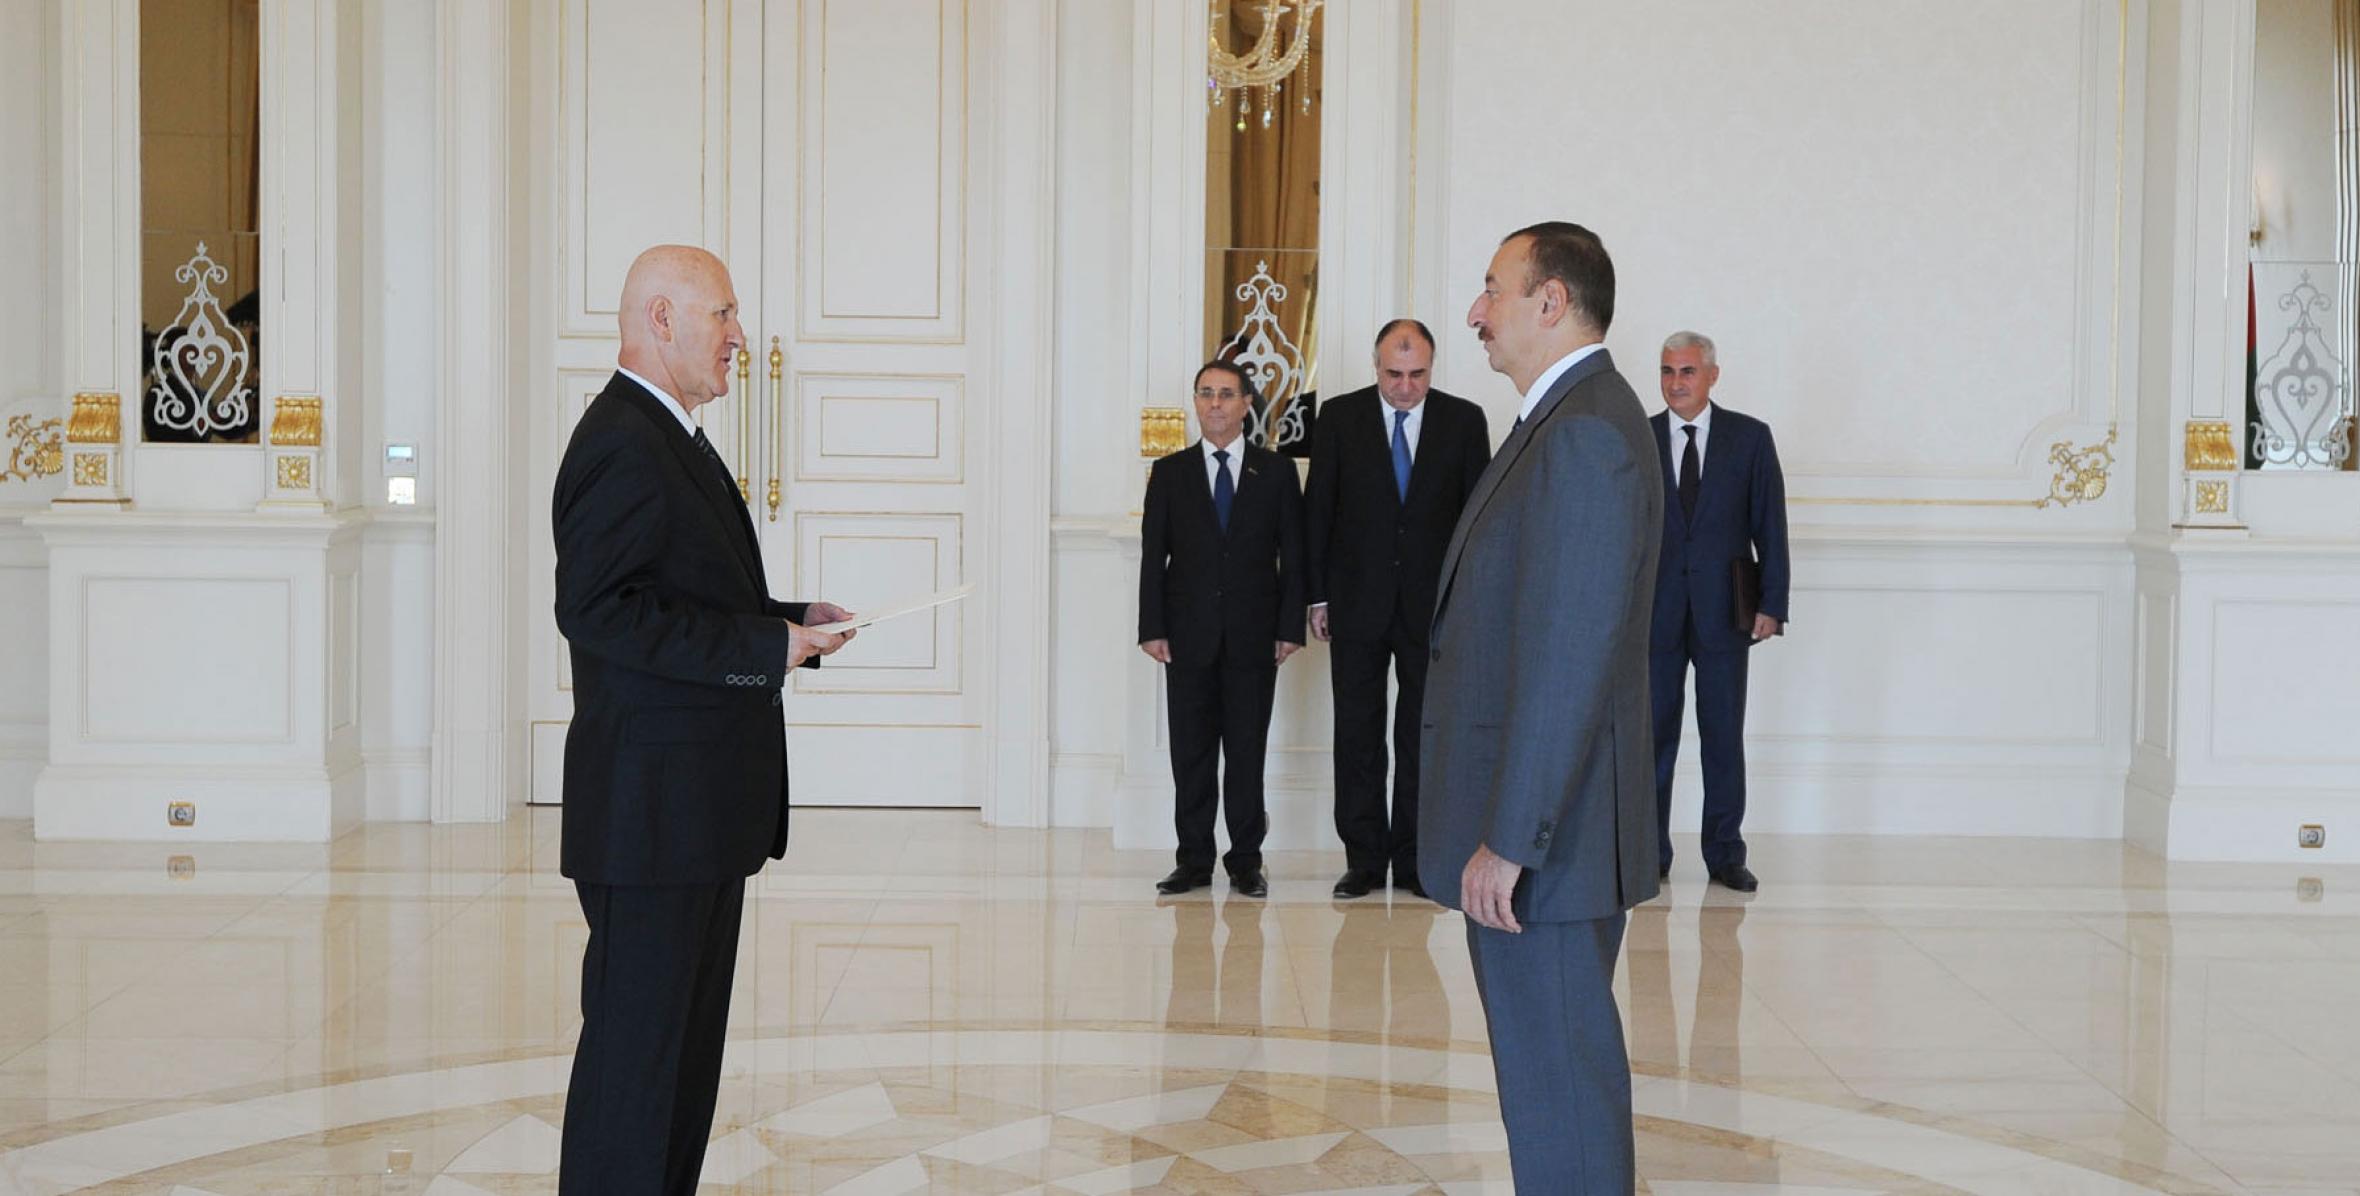 Ильхам Алиев принял верительные грамоты новоназначенного посла Черногории в Азербайджане Рамо Бралича